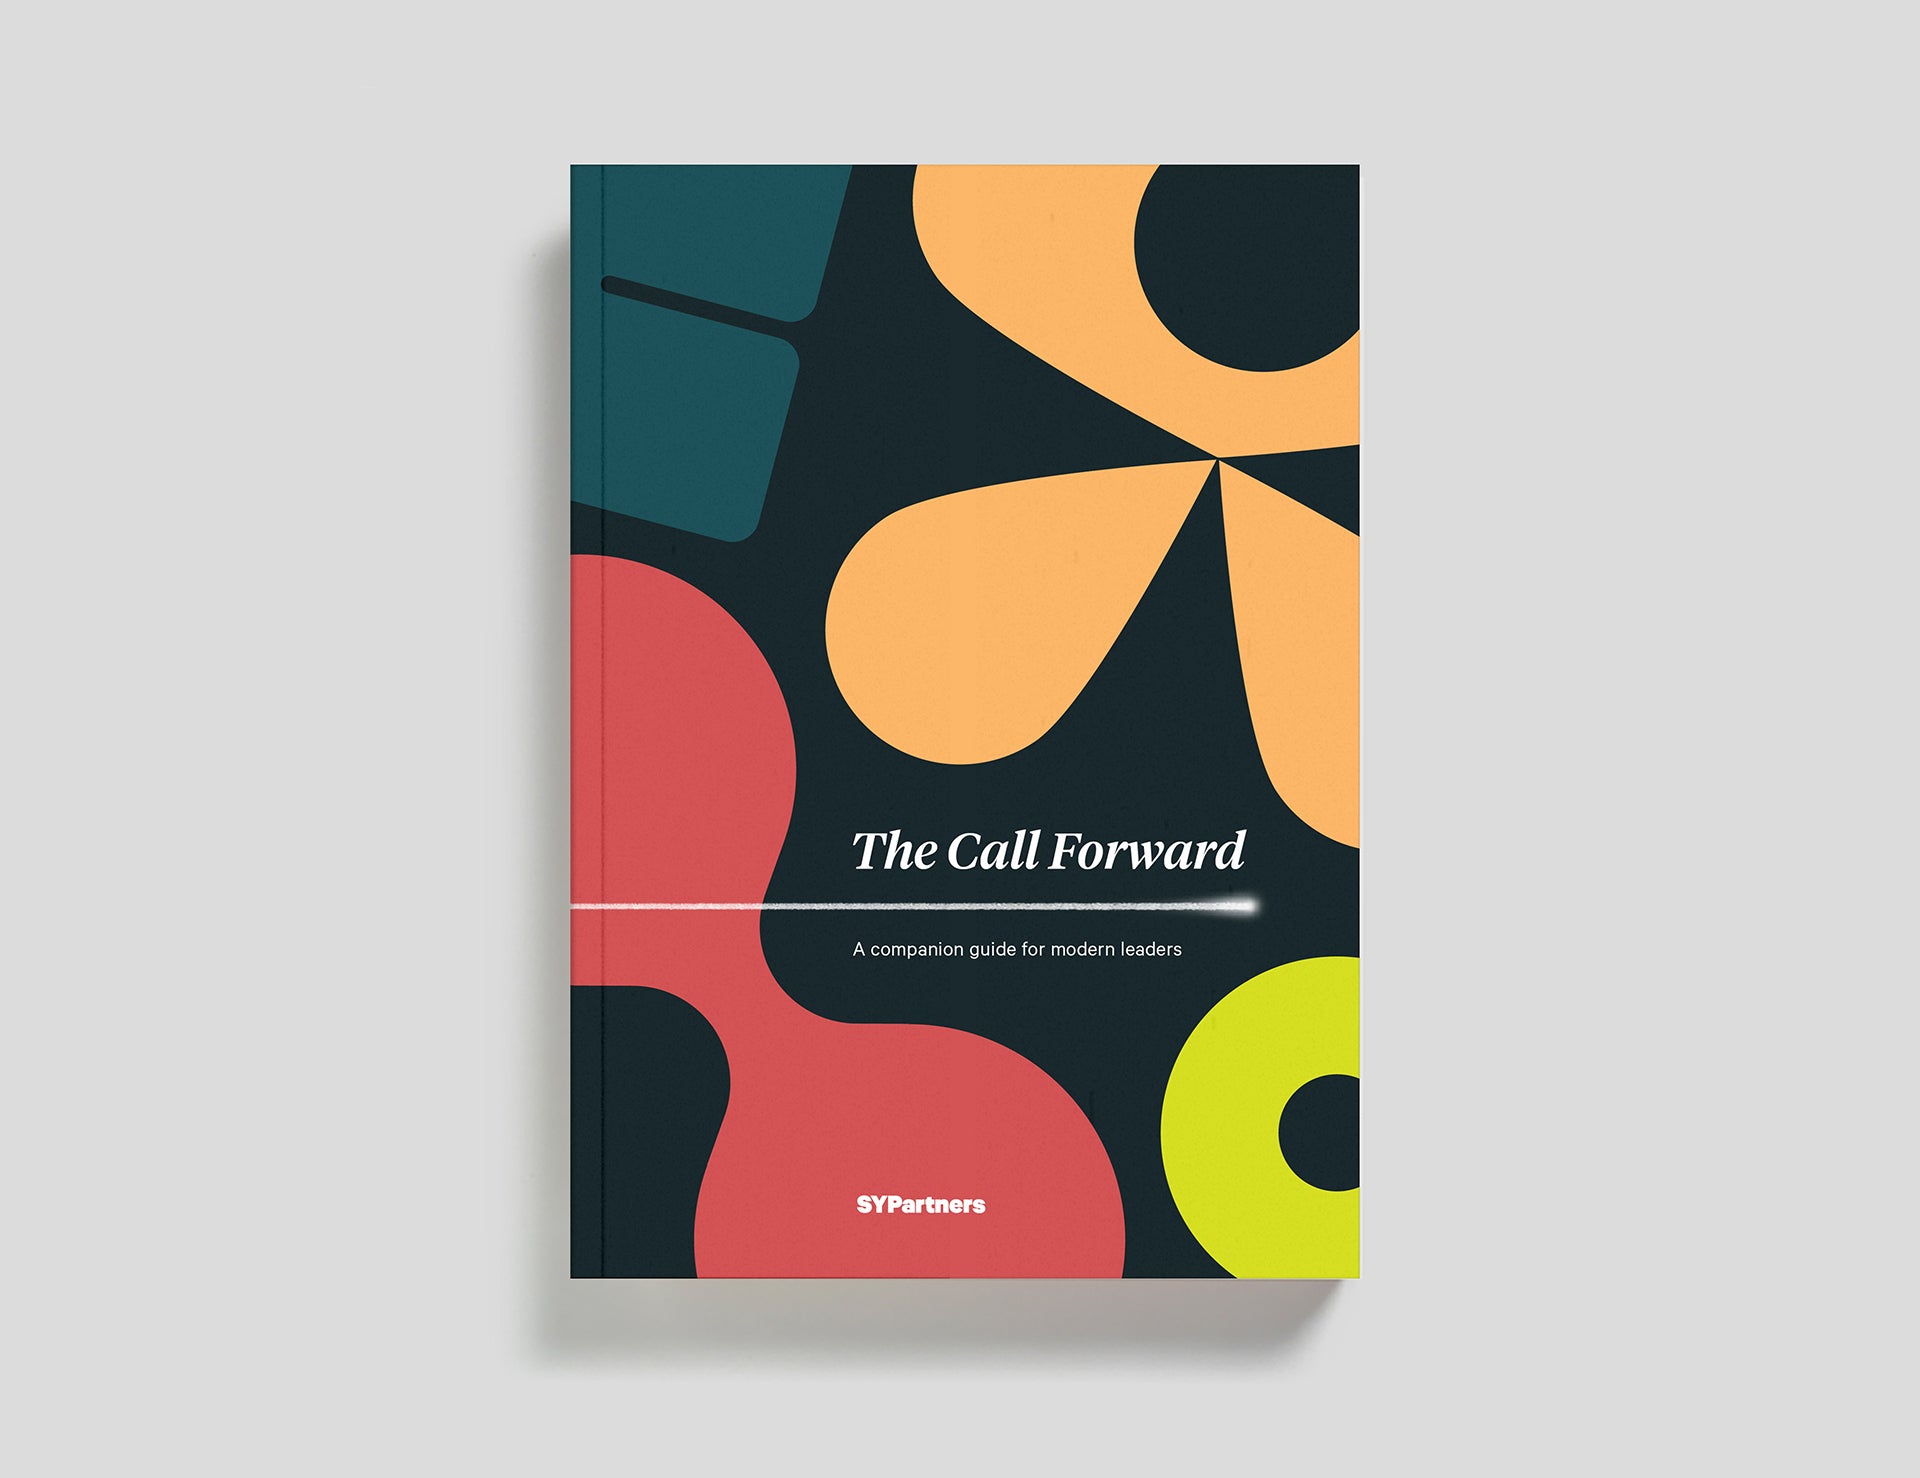 The Call Forward book